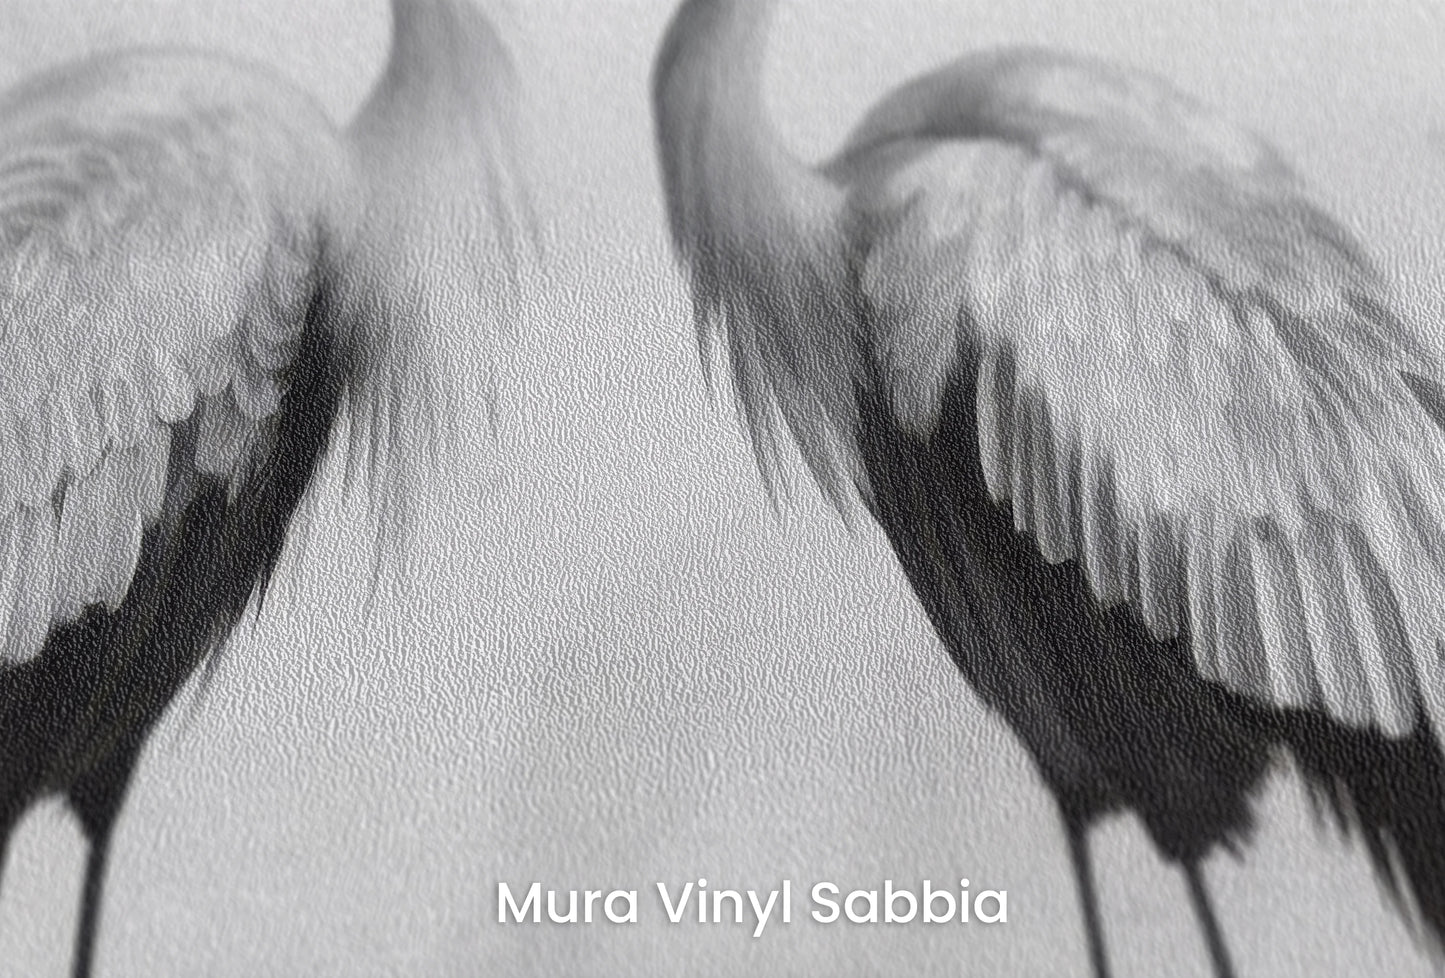 Zbliżenie na artystyczną fototapetę o nazwie Misty Blossom #2 na podłożu Mura Vinyl Sabbia struktura grubego ziarna piasku.